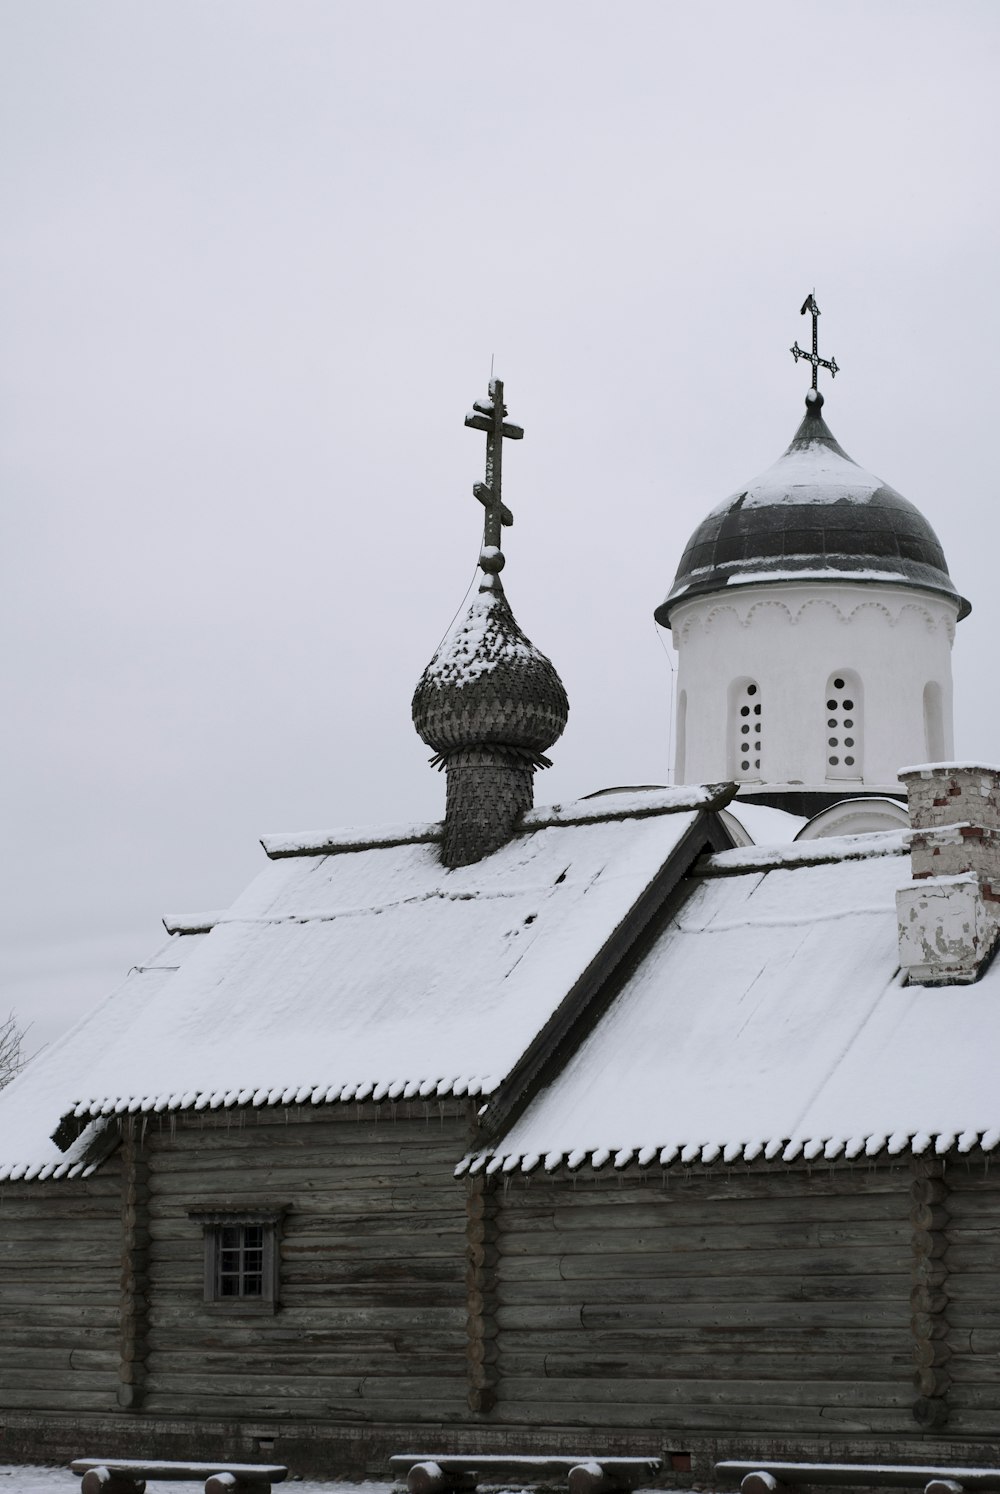 눈으로 덮인 검은 지붕의 흰색 교회